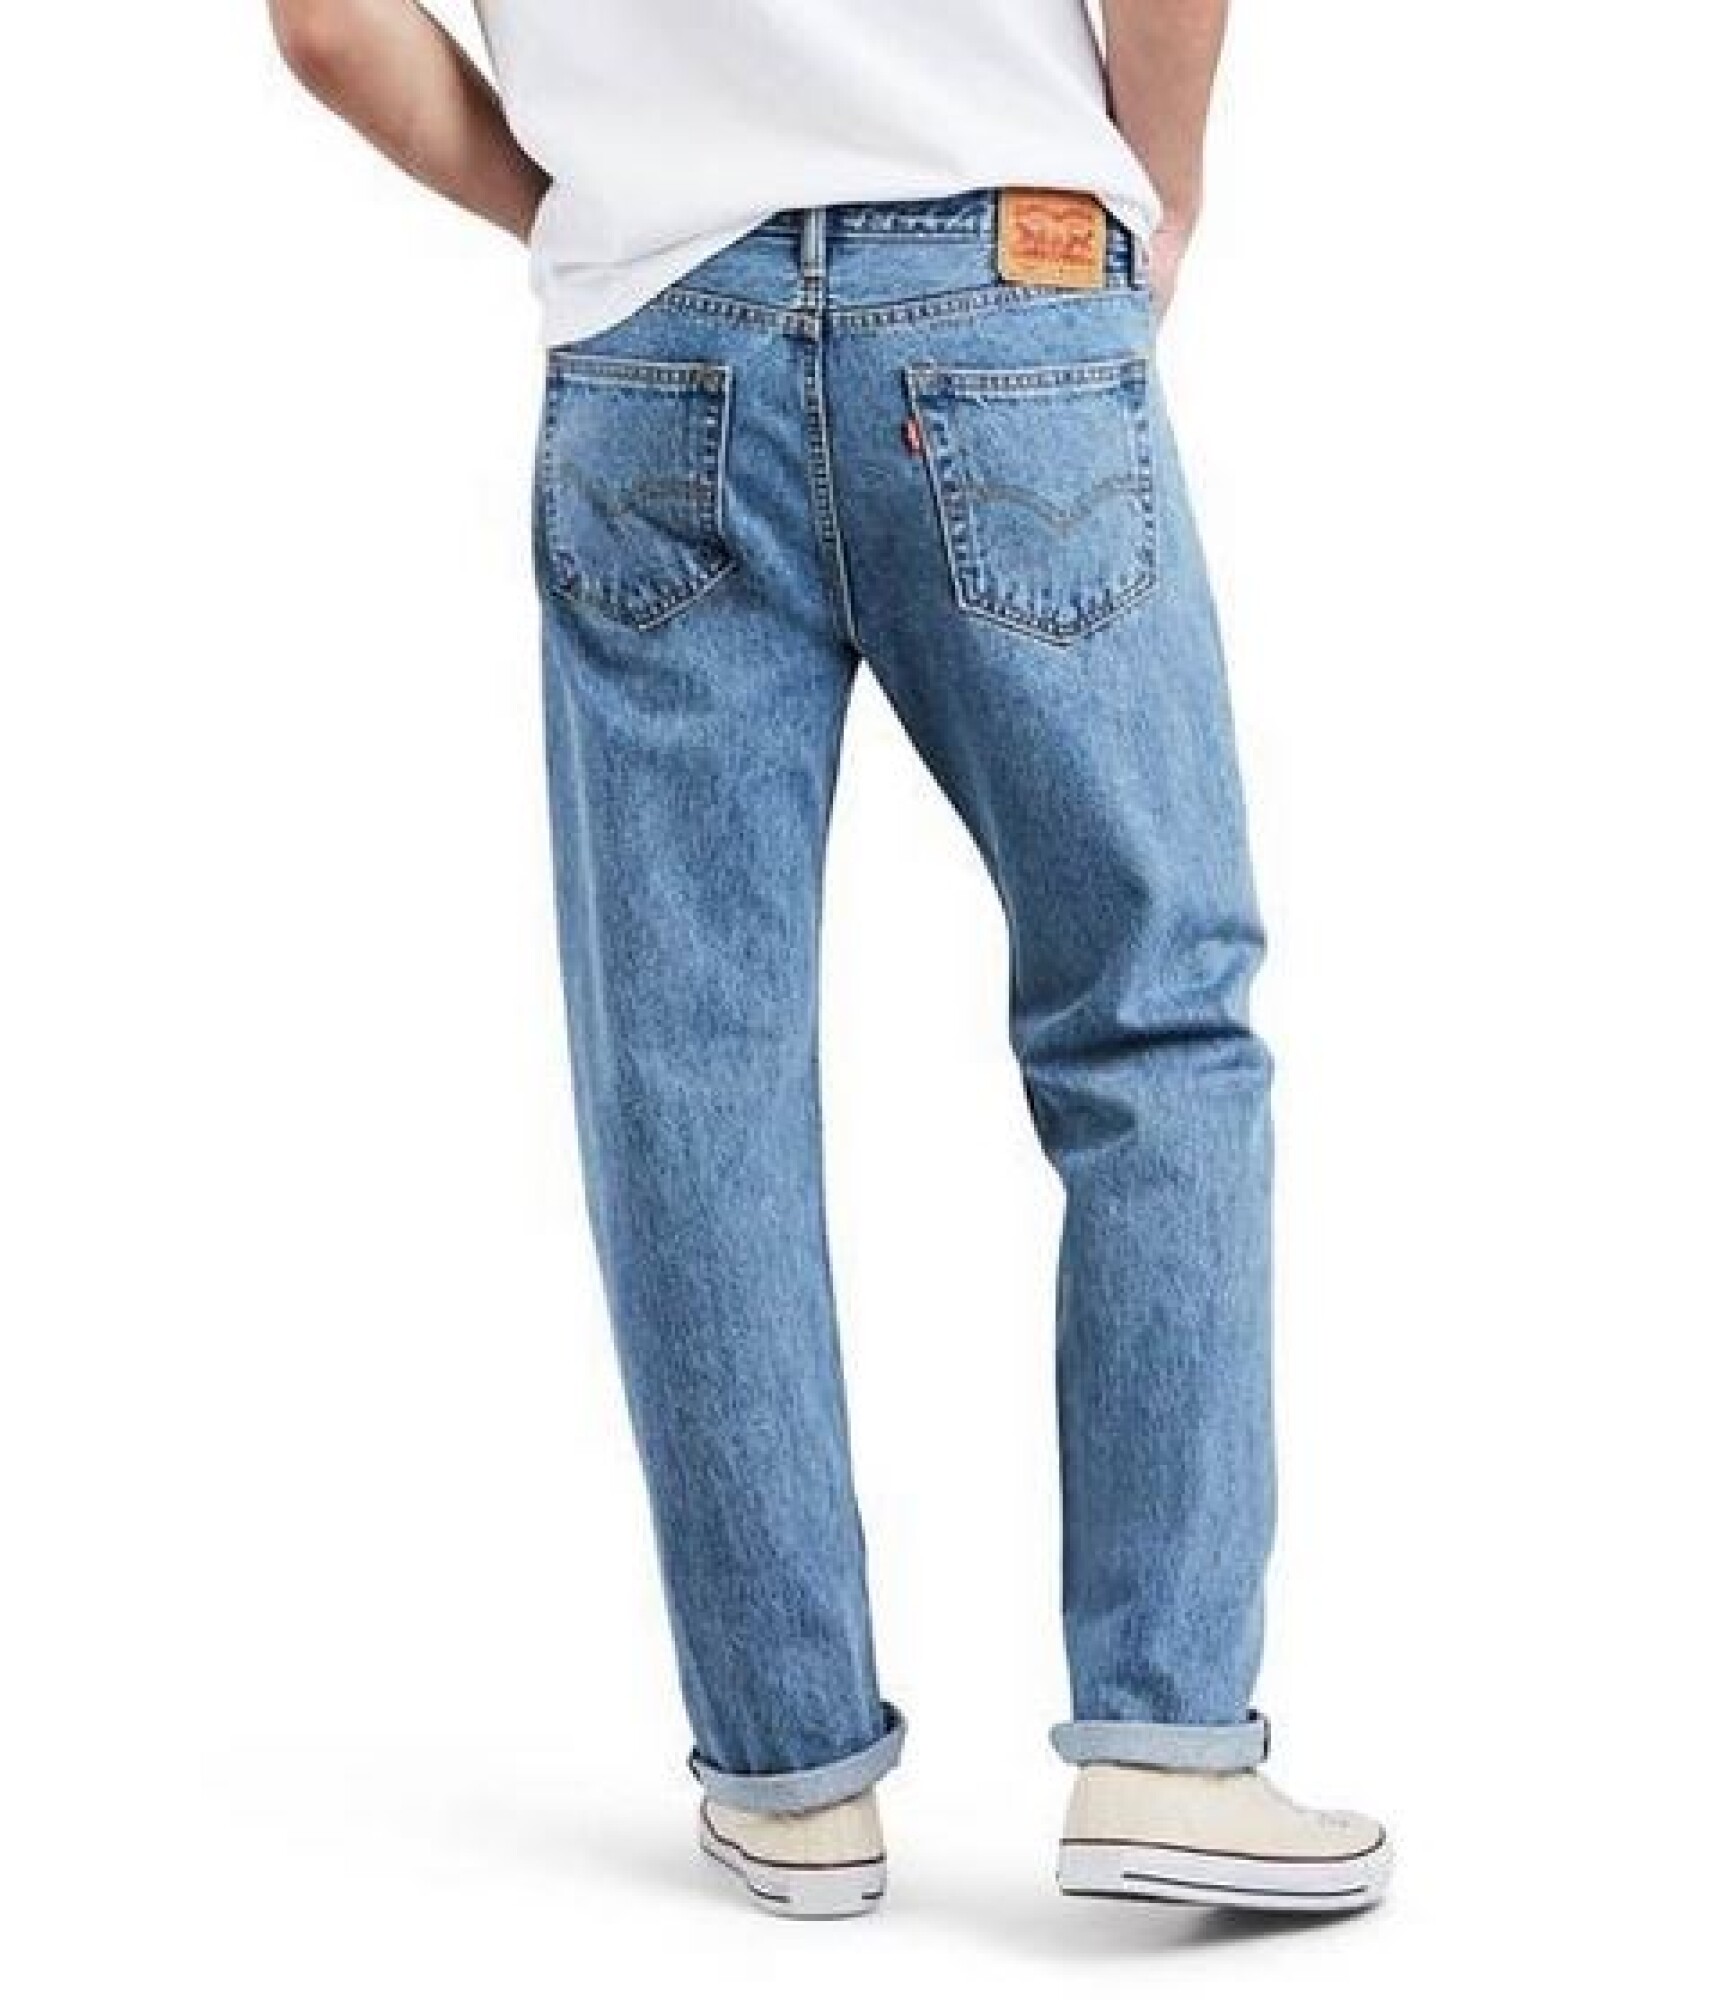 VAQUERO LEVIS 505 - 4834 — Unica Jeans